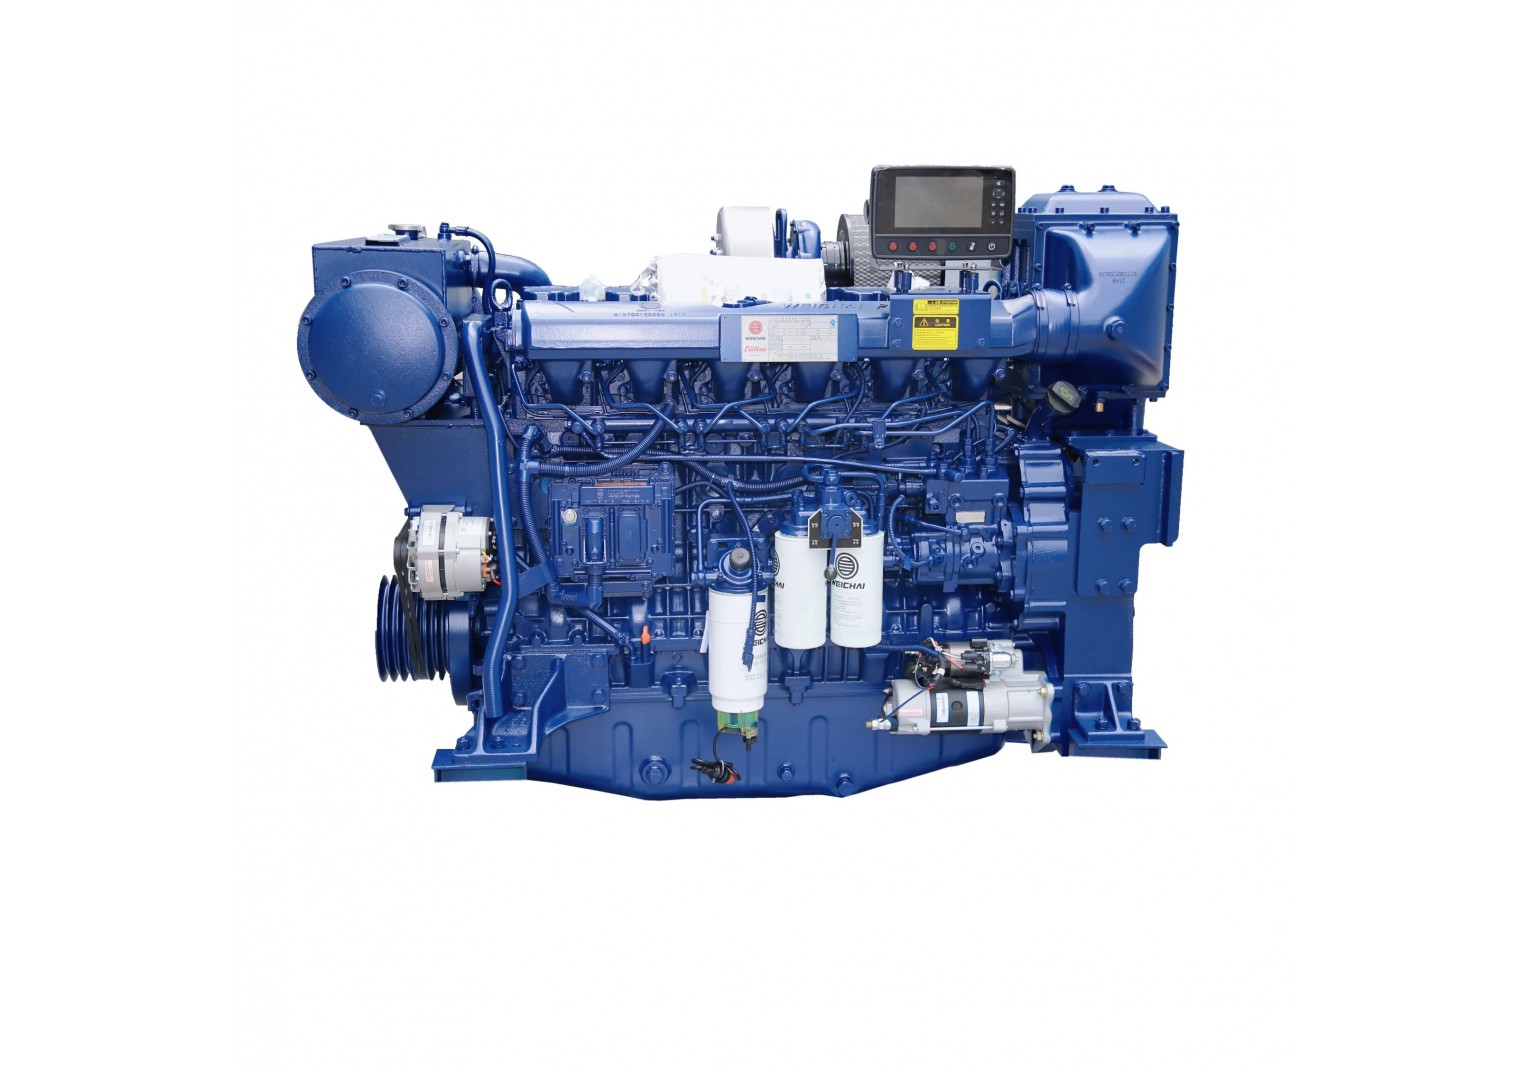 Boat Engine 6 cylinders Wp13c550-C21 